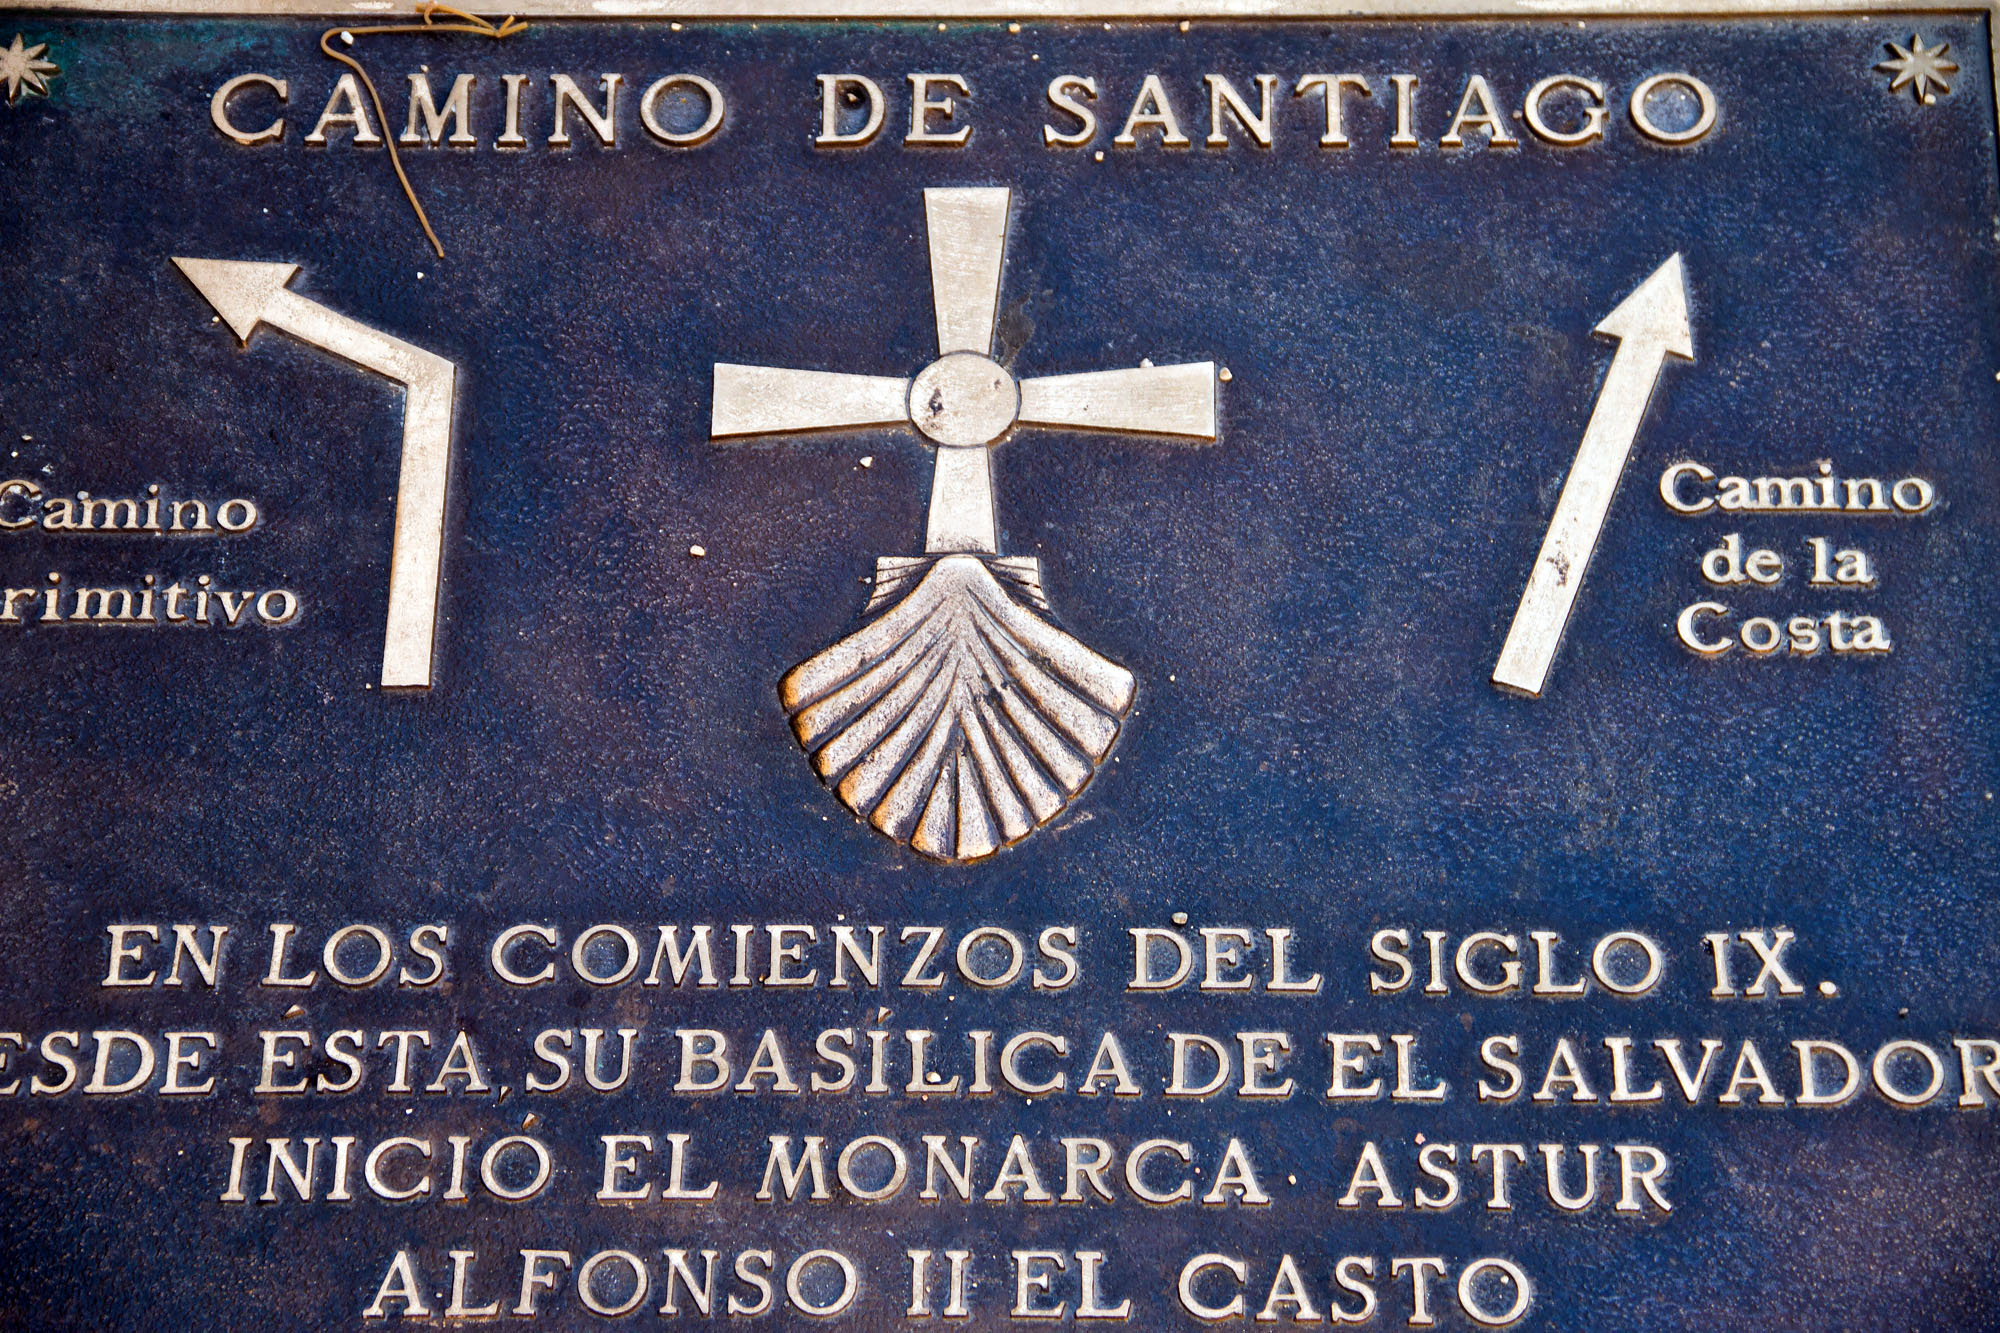 Camino de Santiago Hiking Signs